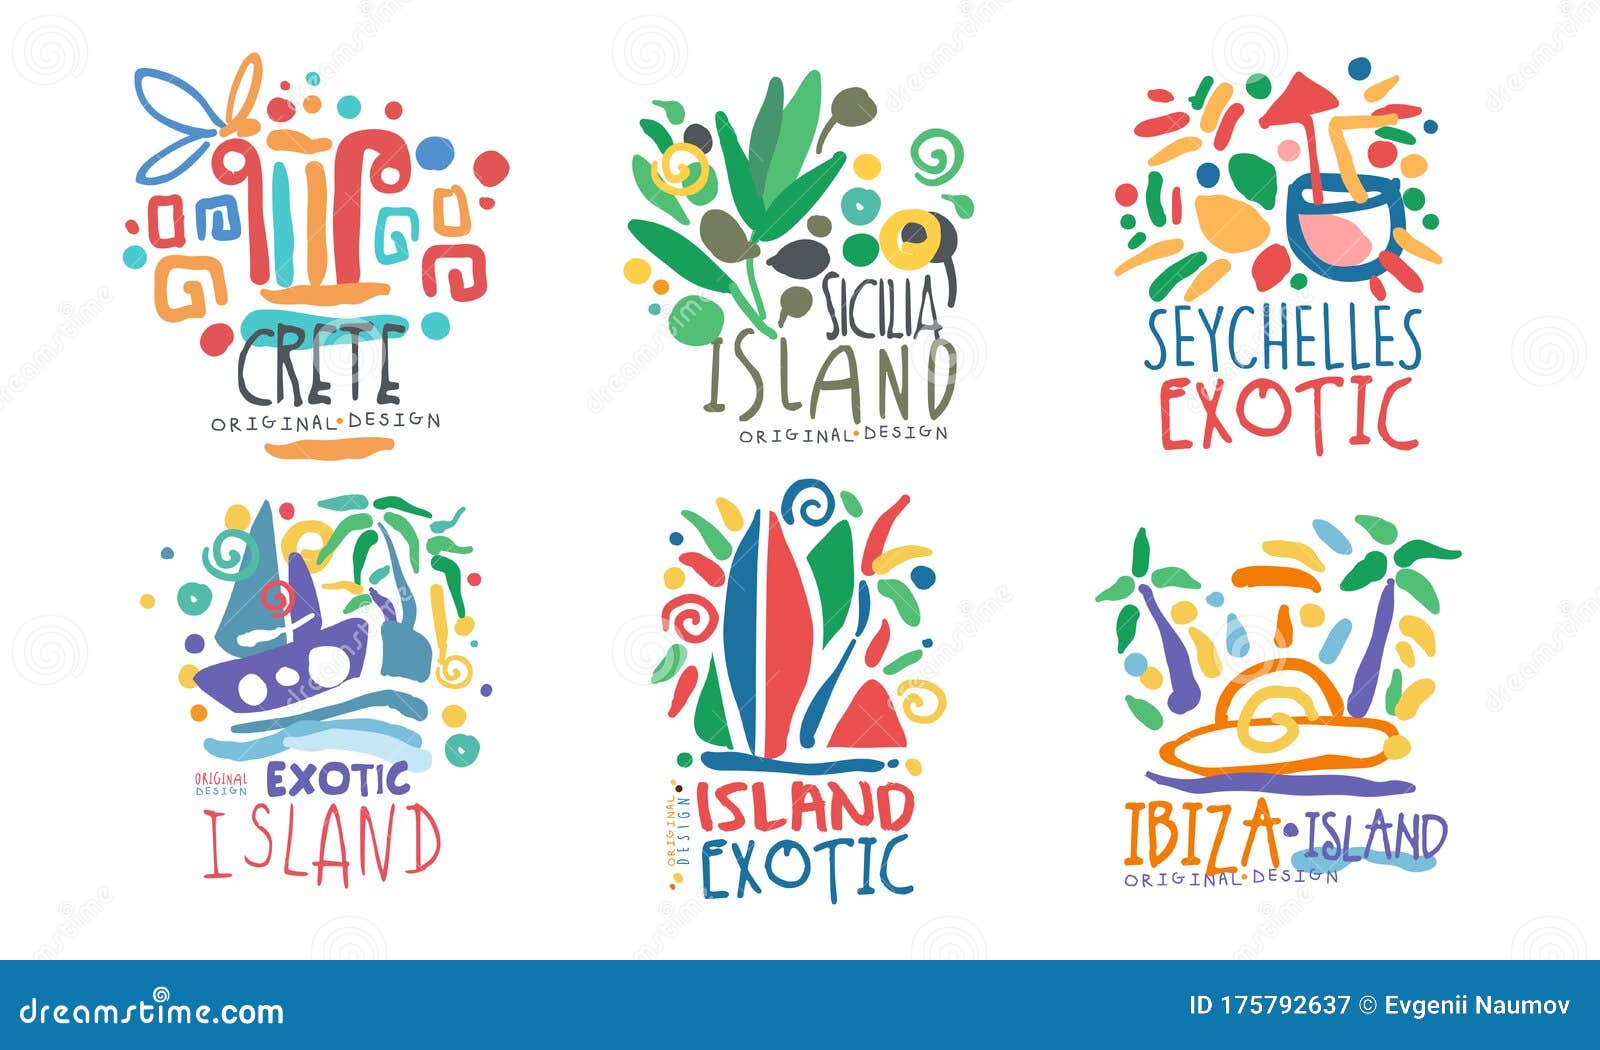 Logo islands. Экзотические логотипы. Экзотика логотип. Сицилия лого. Остров Сицилия лого.